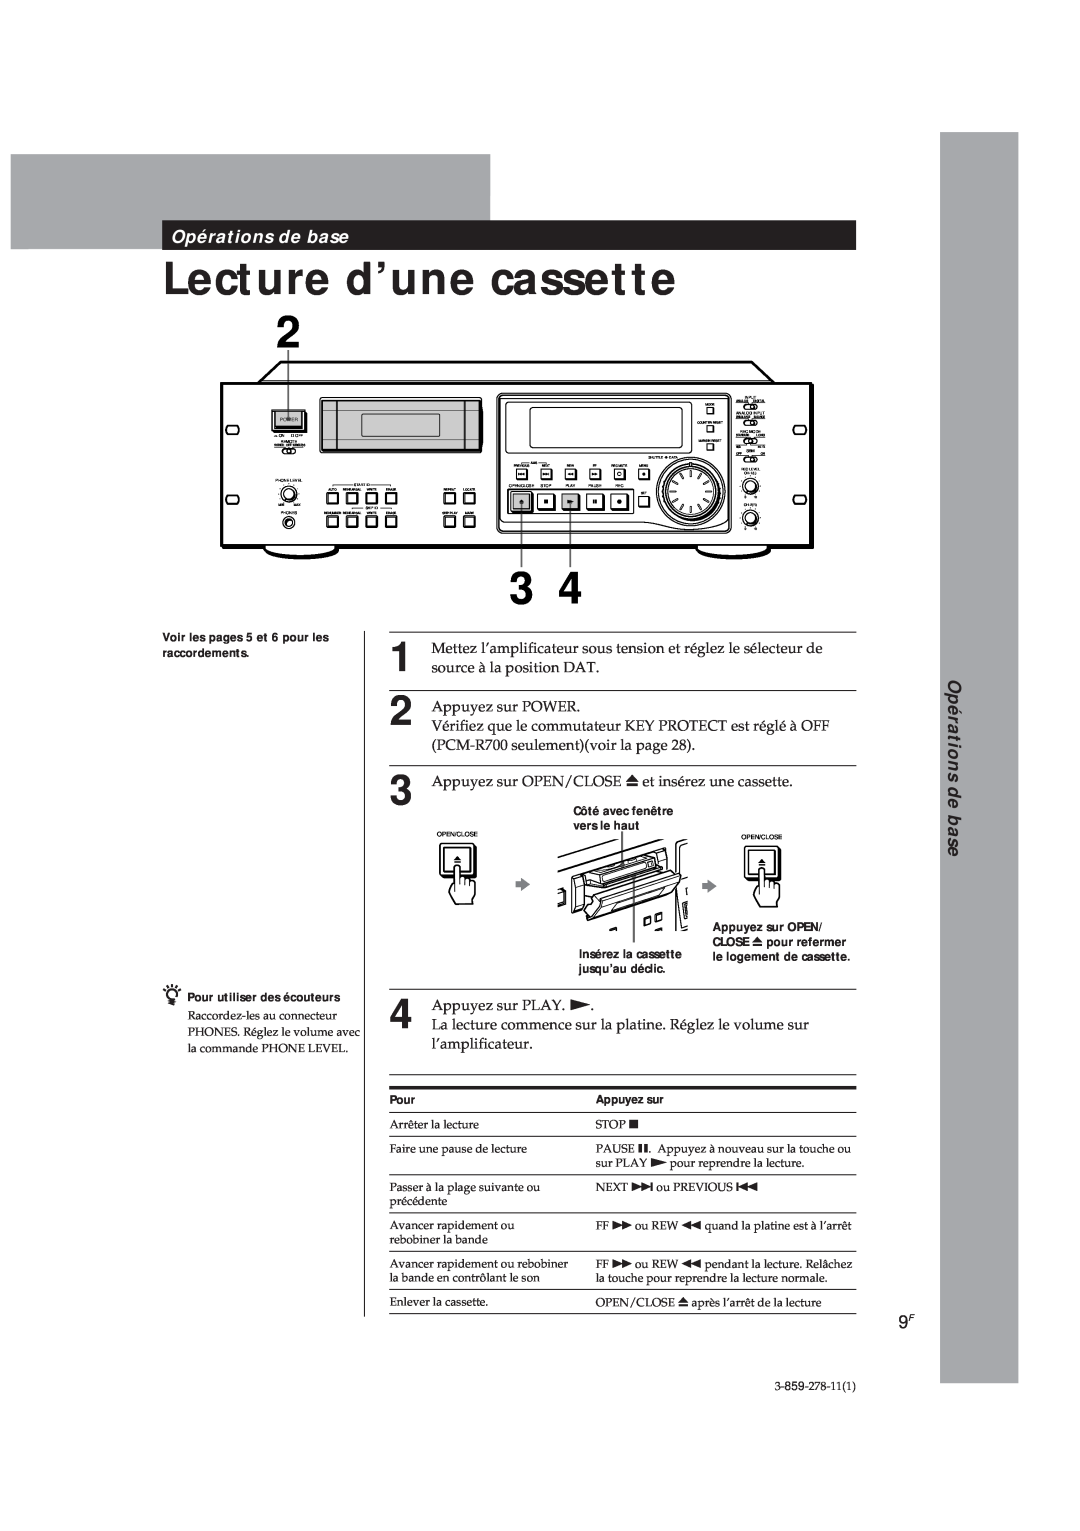 Sony PCM-R700 Lecture d’une cassette, Opérations de base, Voir les pages 5 et 6 pour les raccordements, Pour, Appuyez sur 